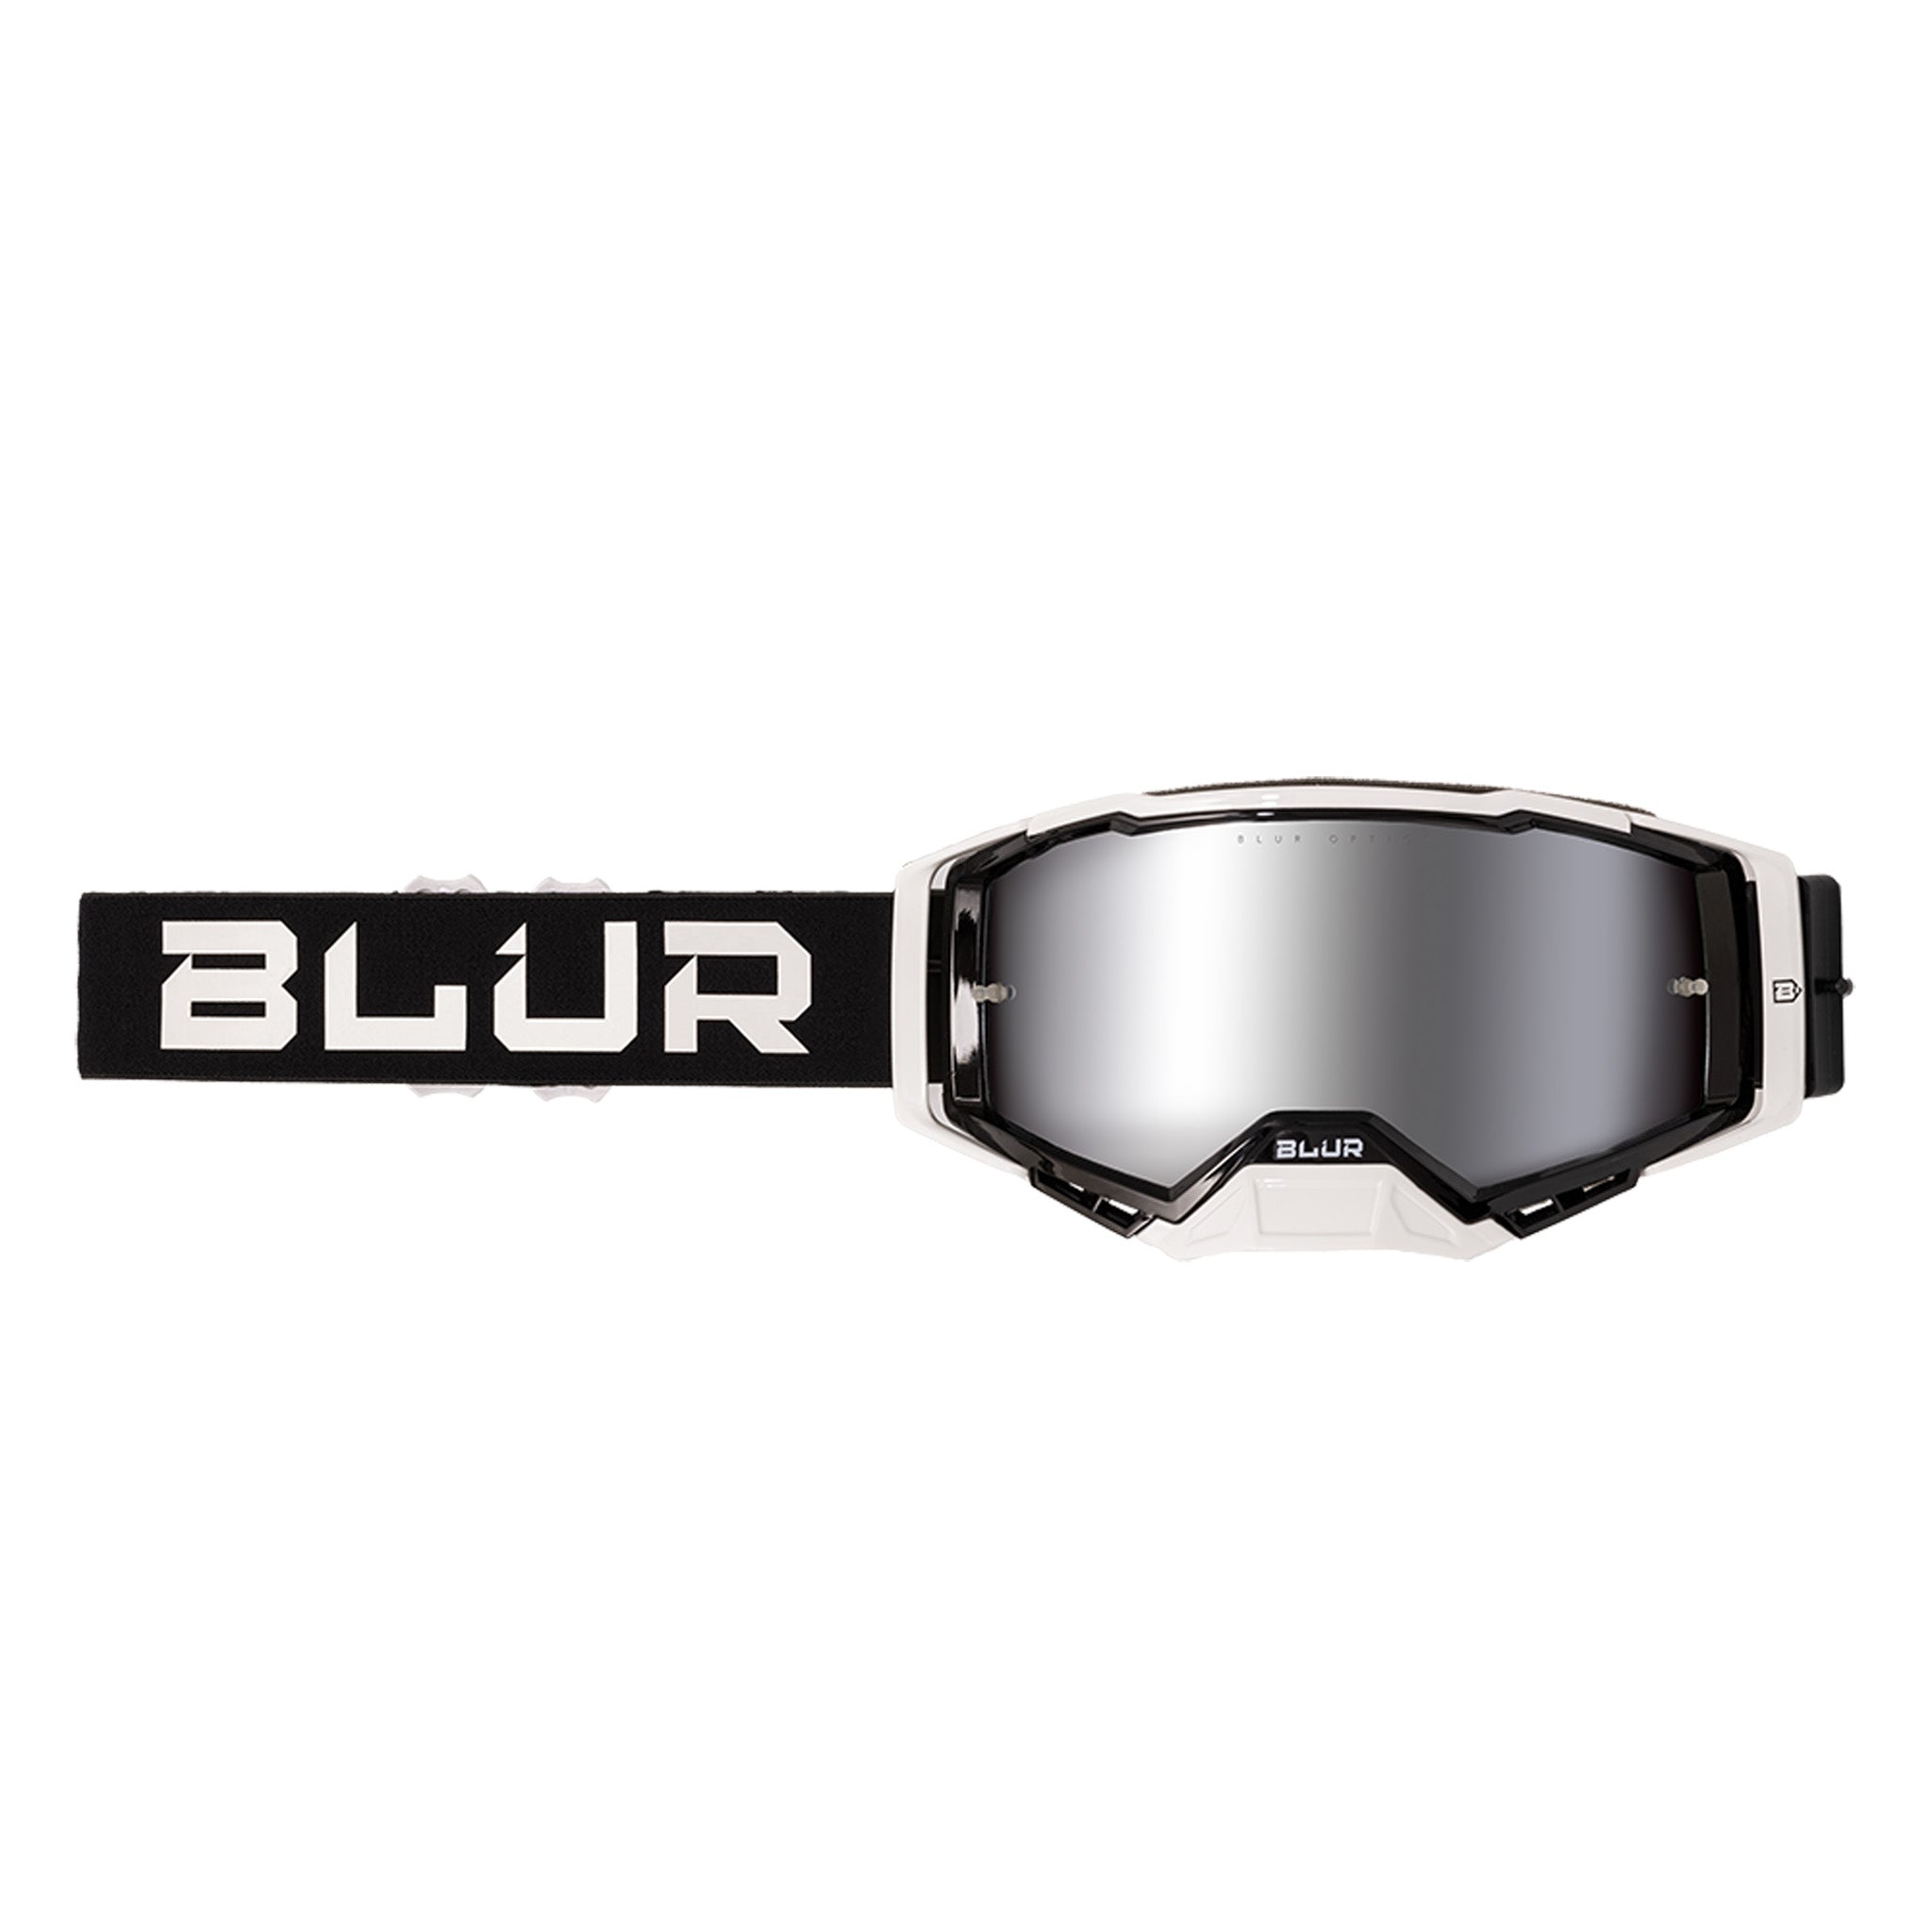 Blur Goggles B40 Goggle Black/White Silver Mirror Lens